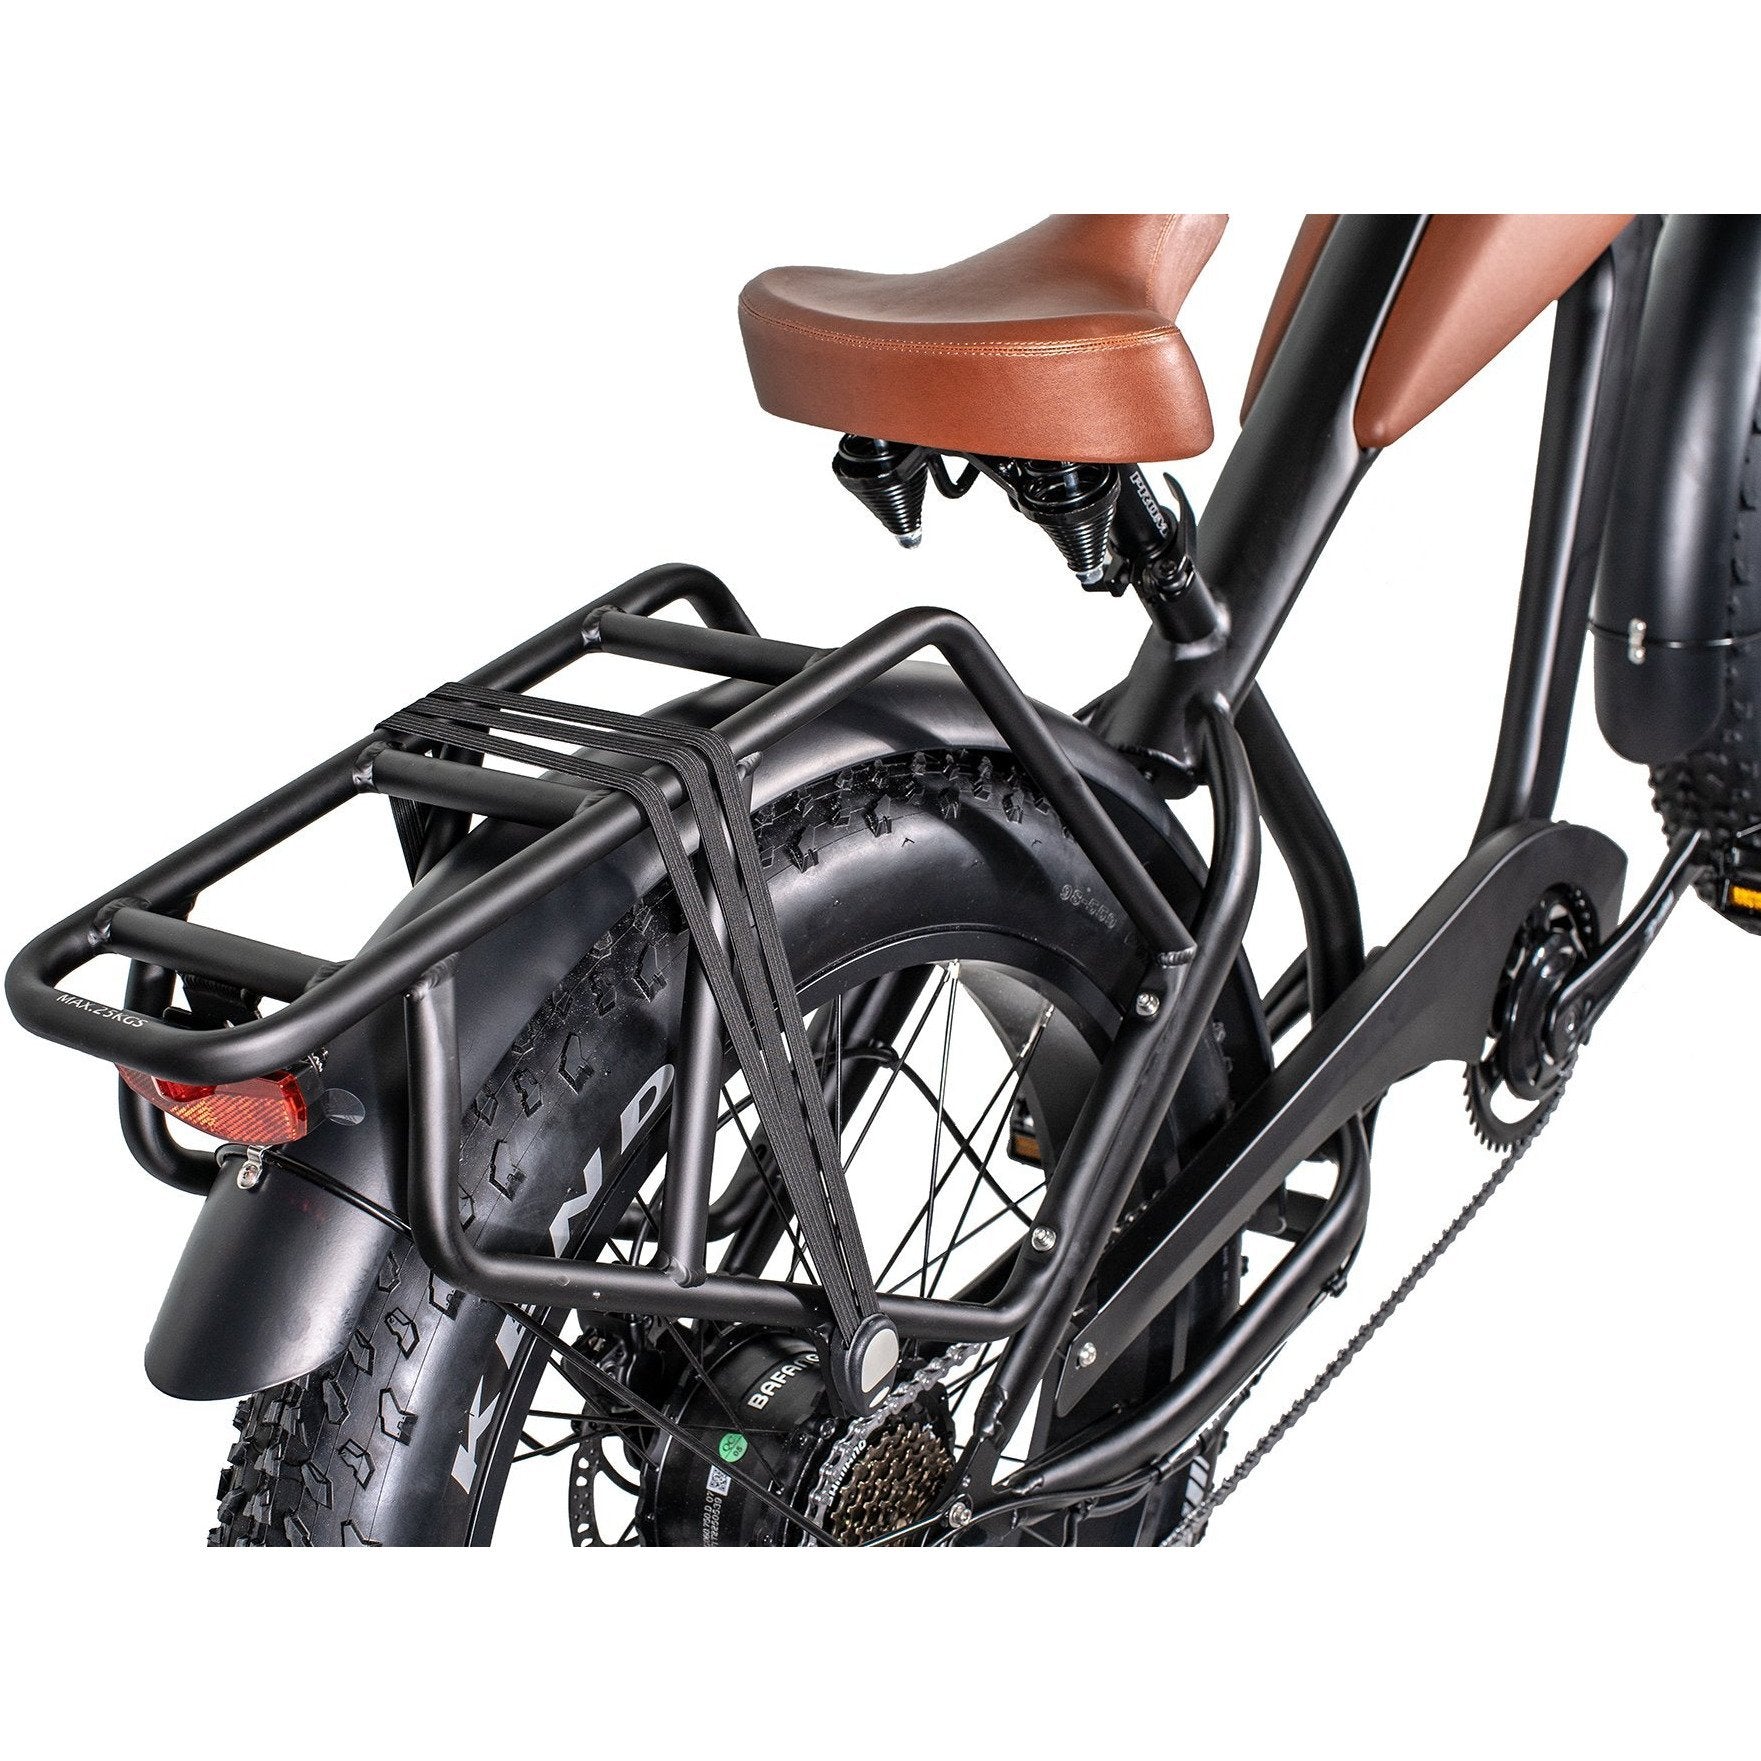 Civi Bikes Accessories Cheetah Rear Rack & Tail Light Cheetah Rear Rack, Fender And Headlight Protector Bundle